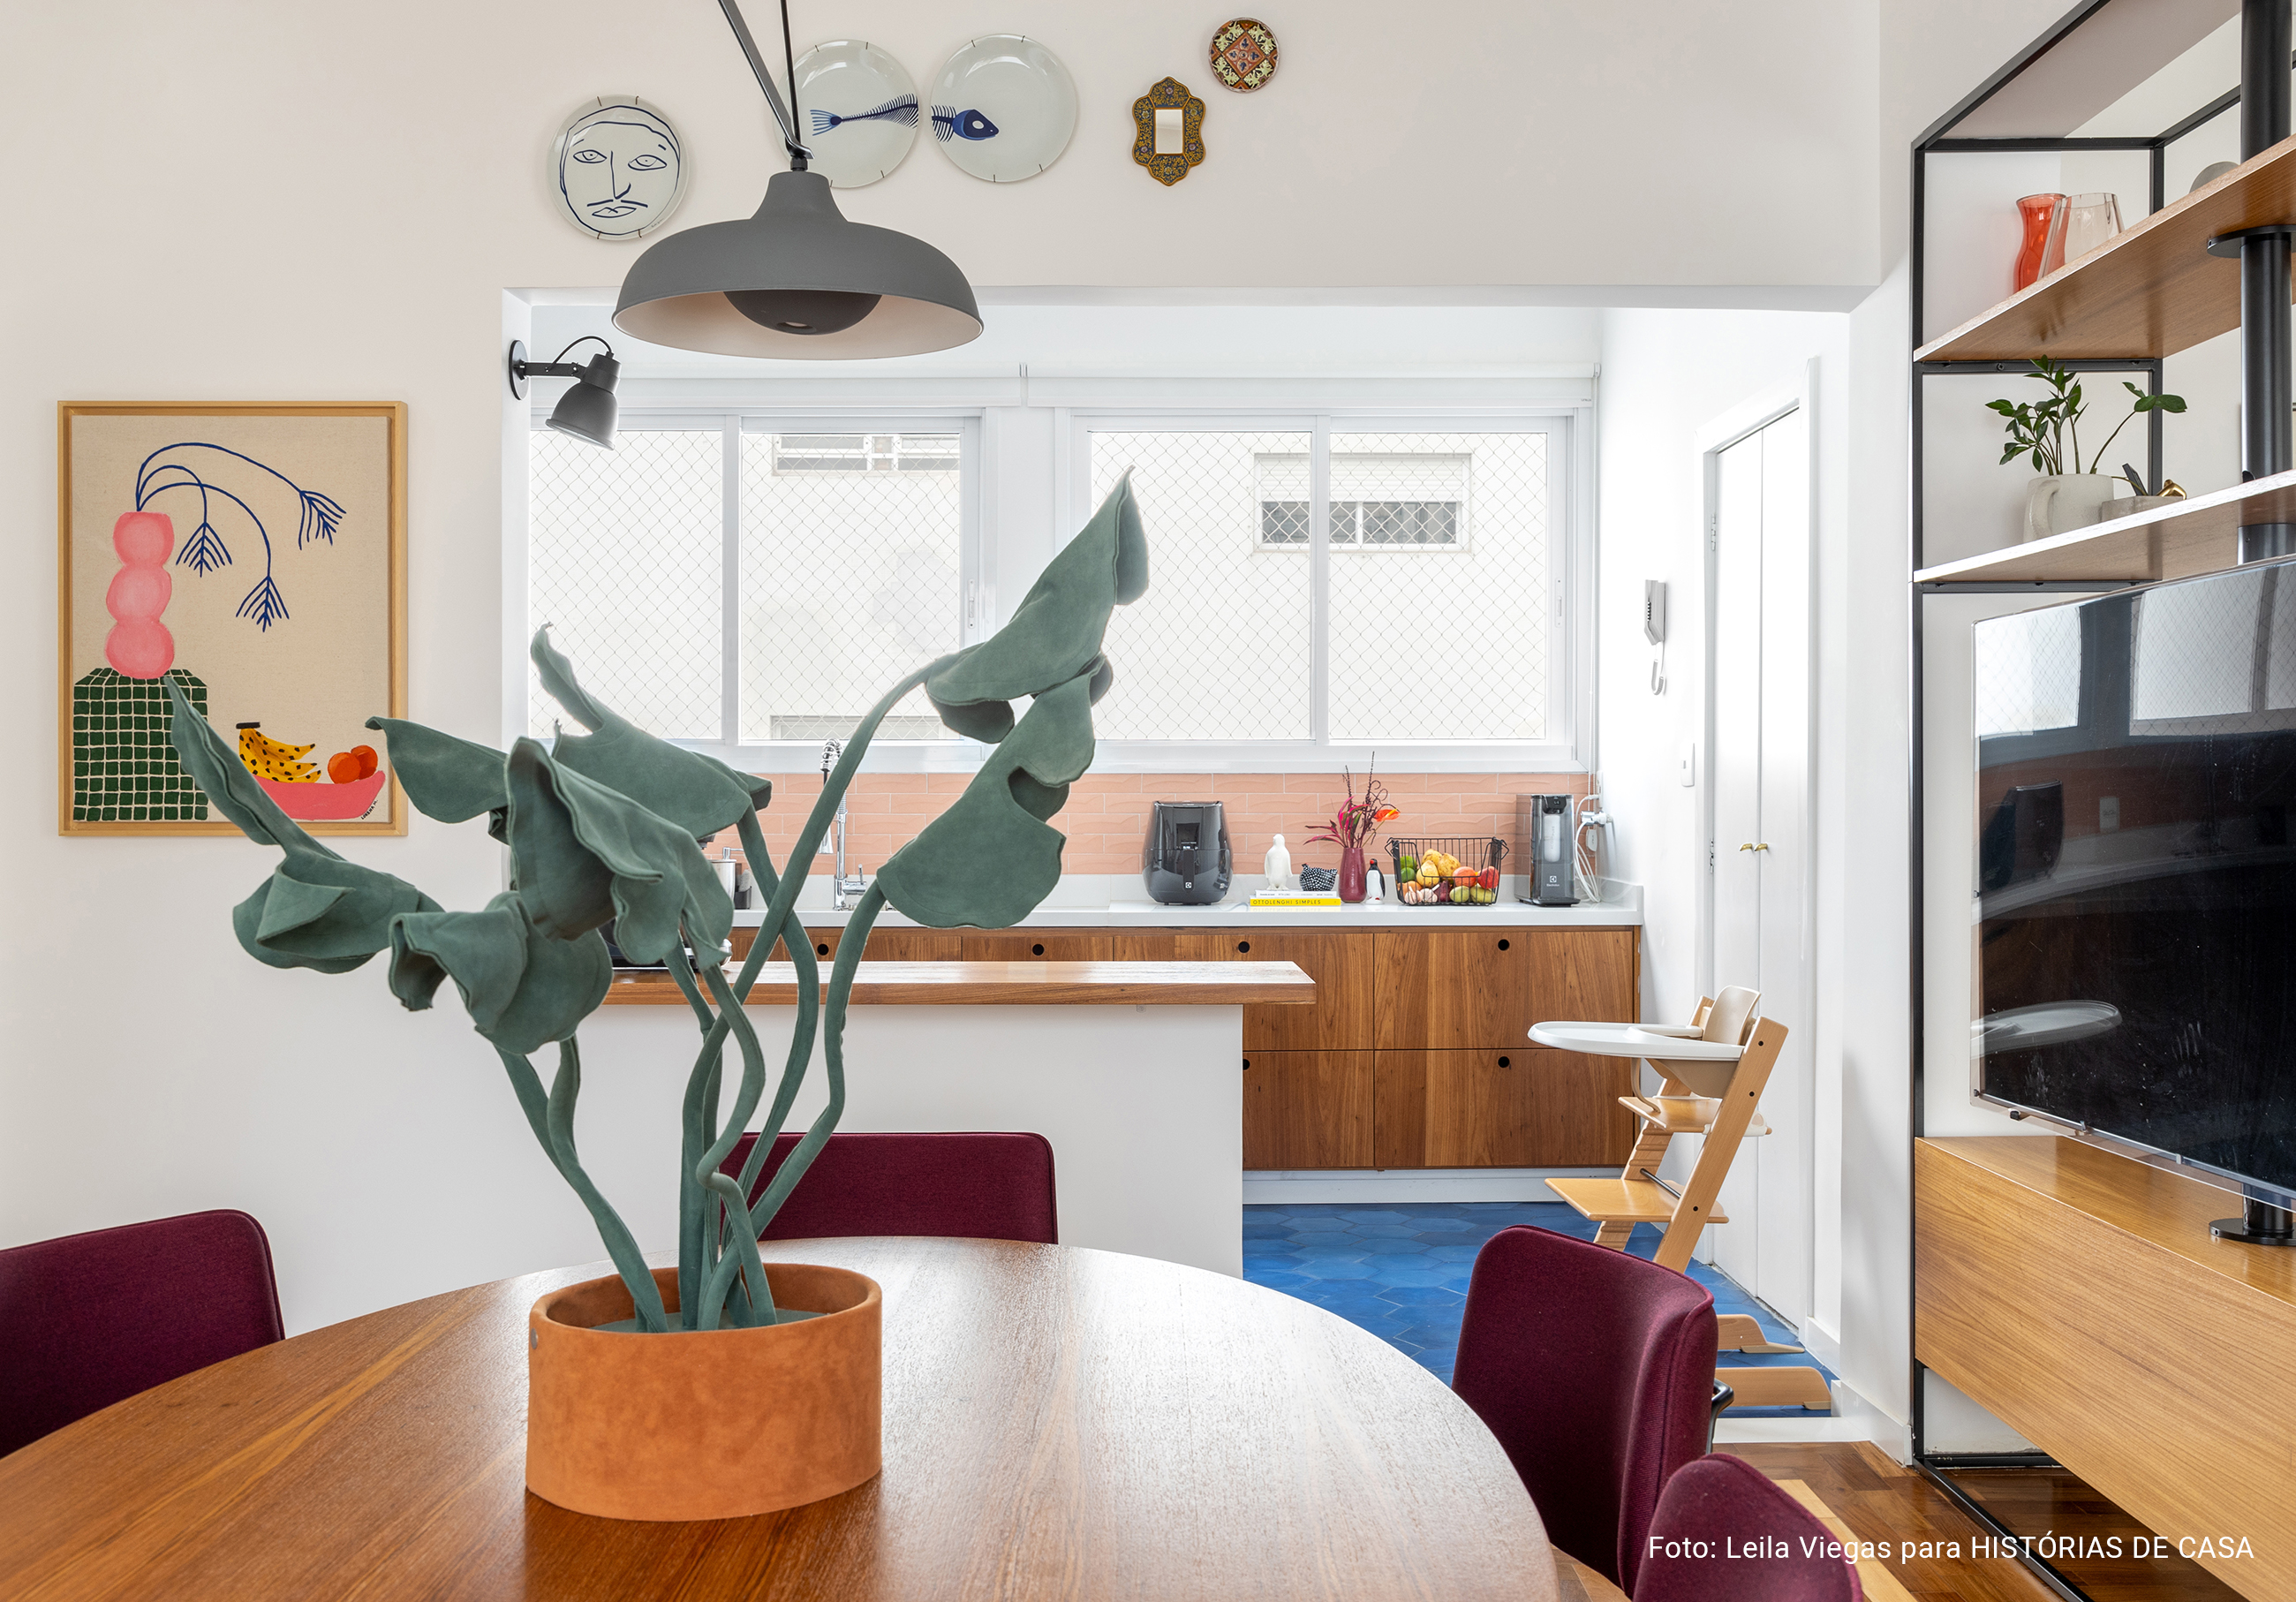 Apartamento colorido com piso azul na cozinha, espaços integrados e quarto de criança.